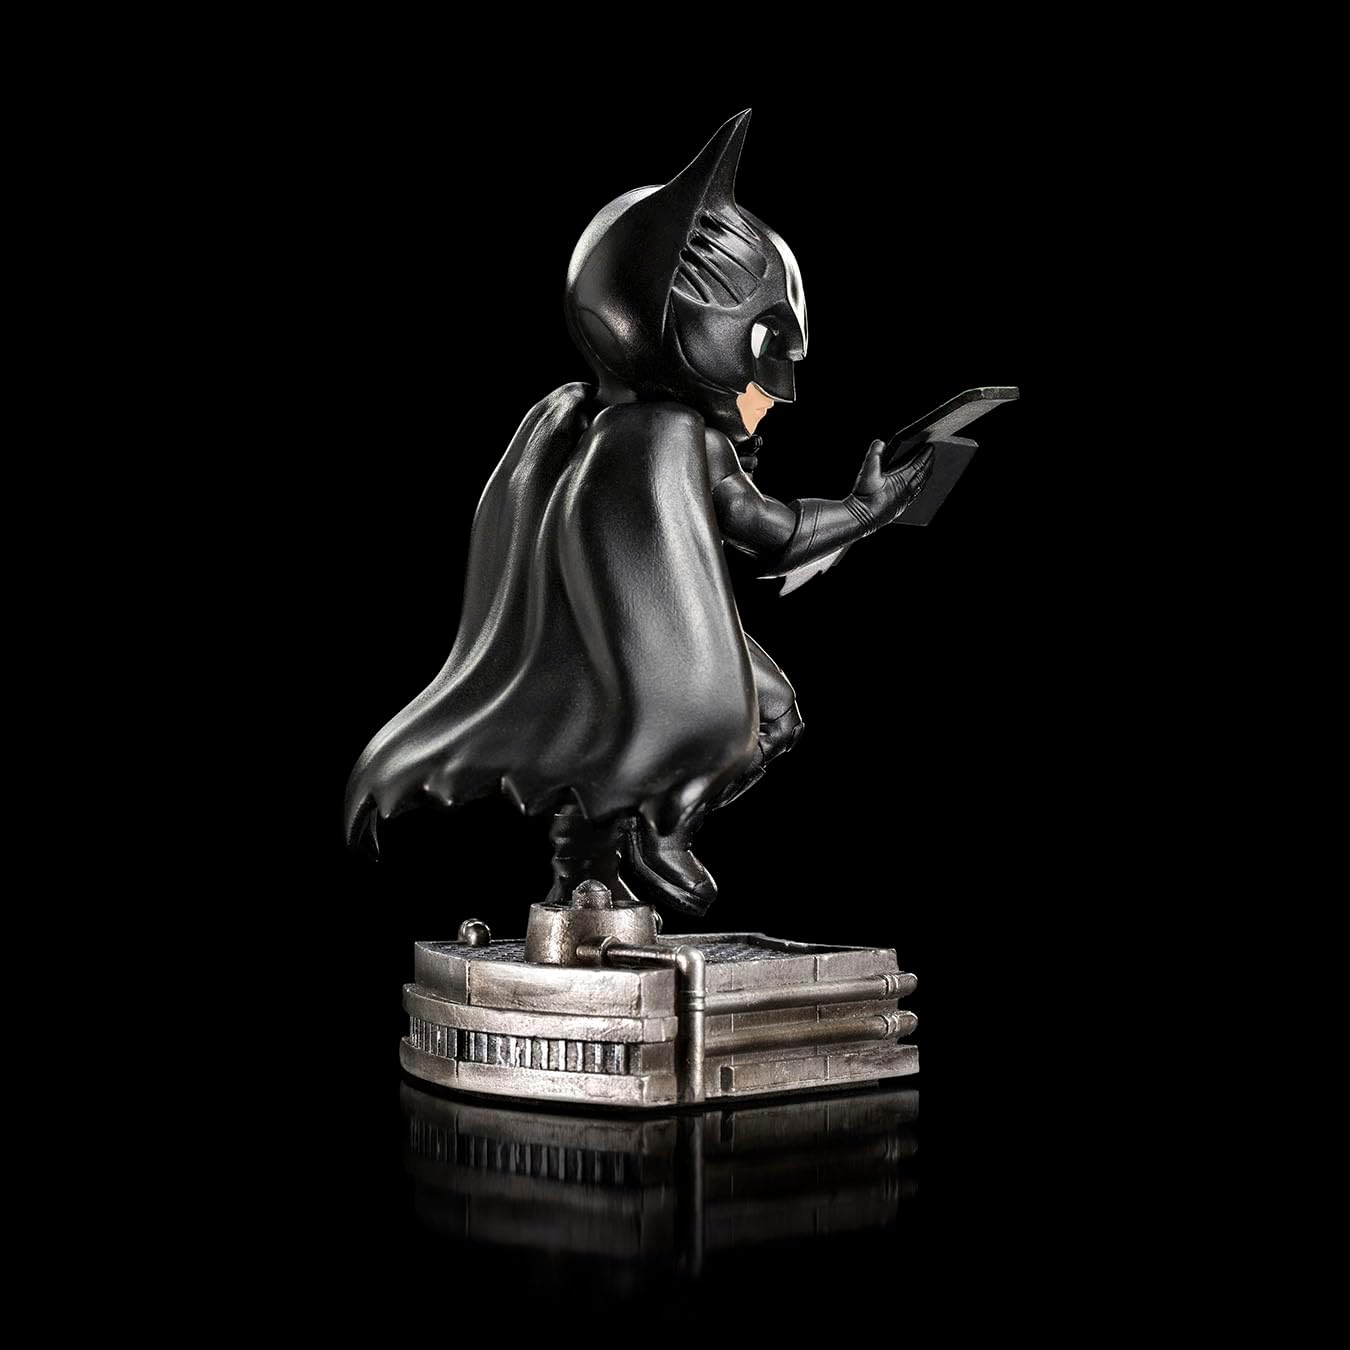 Iron Studios - MiniCo - DC Comics - Batman Forever - Batman Statue 15cm